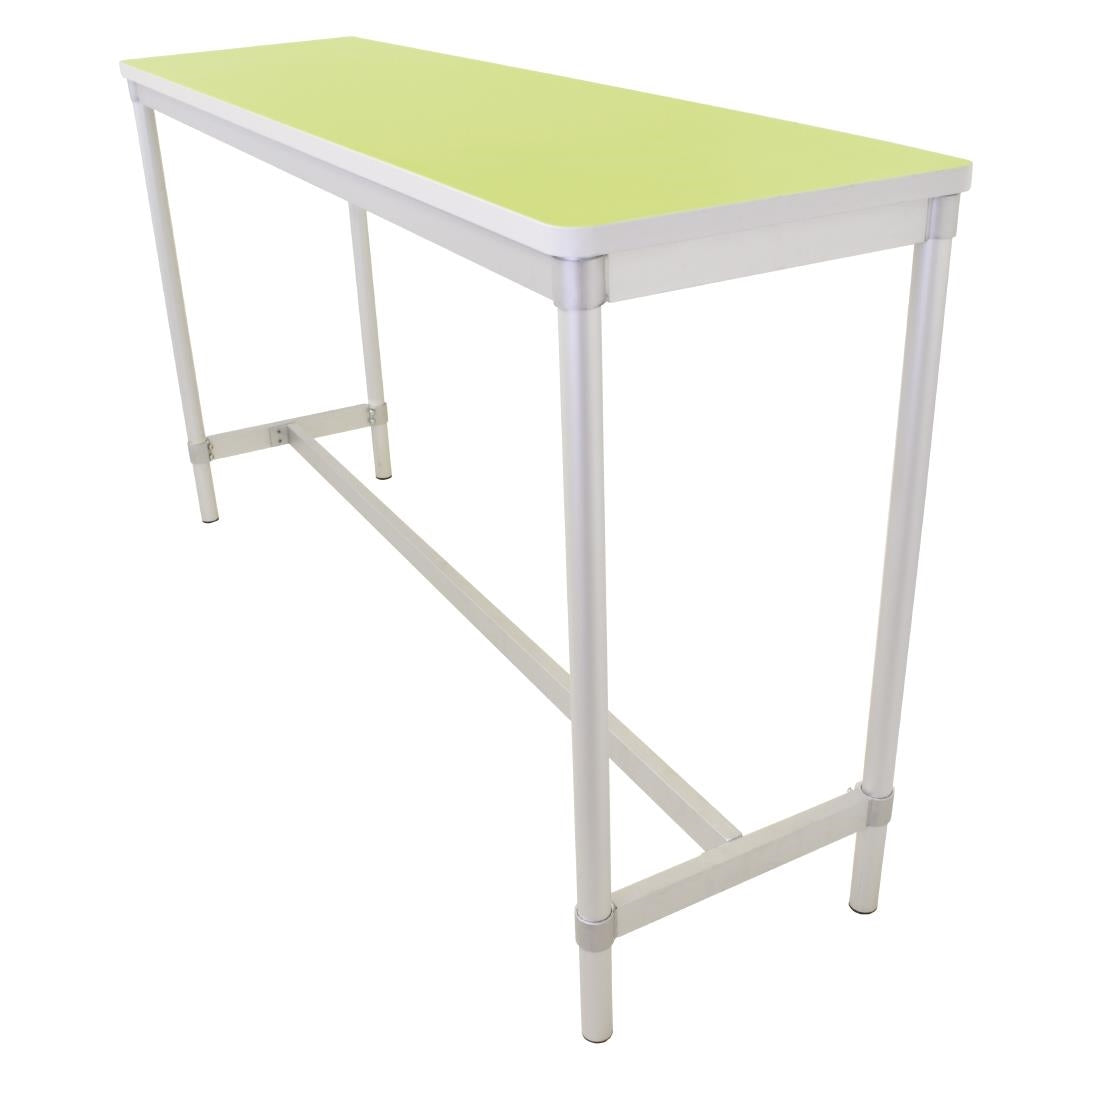 DG130-BG Gopak Enviro Indoor Bright Green Rectangle Poseur Table 1800mm